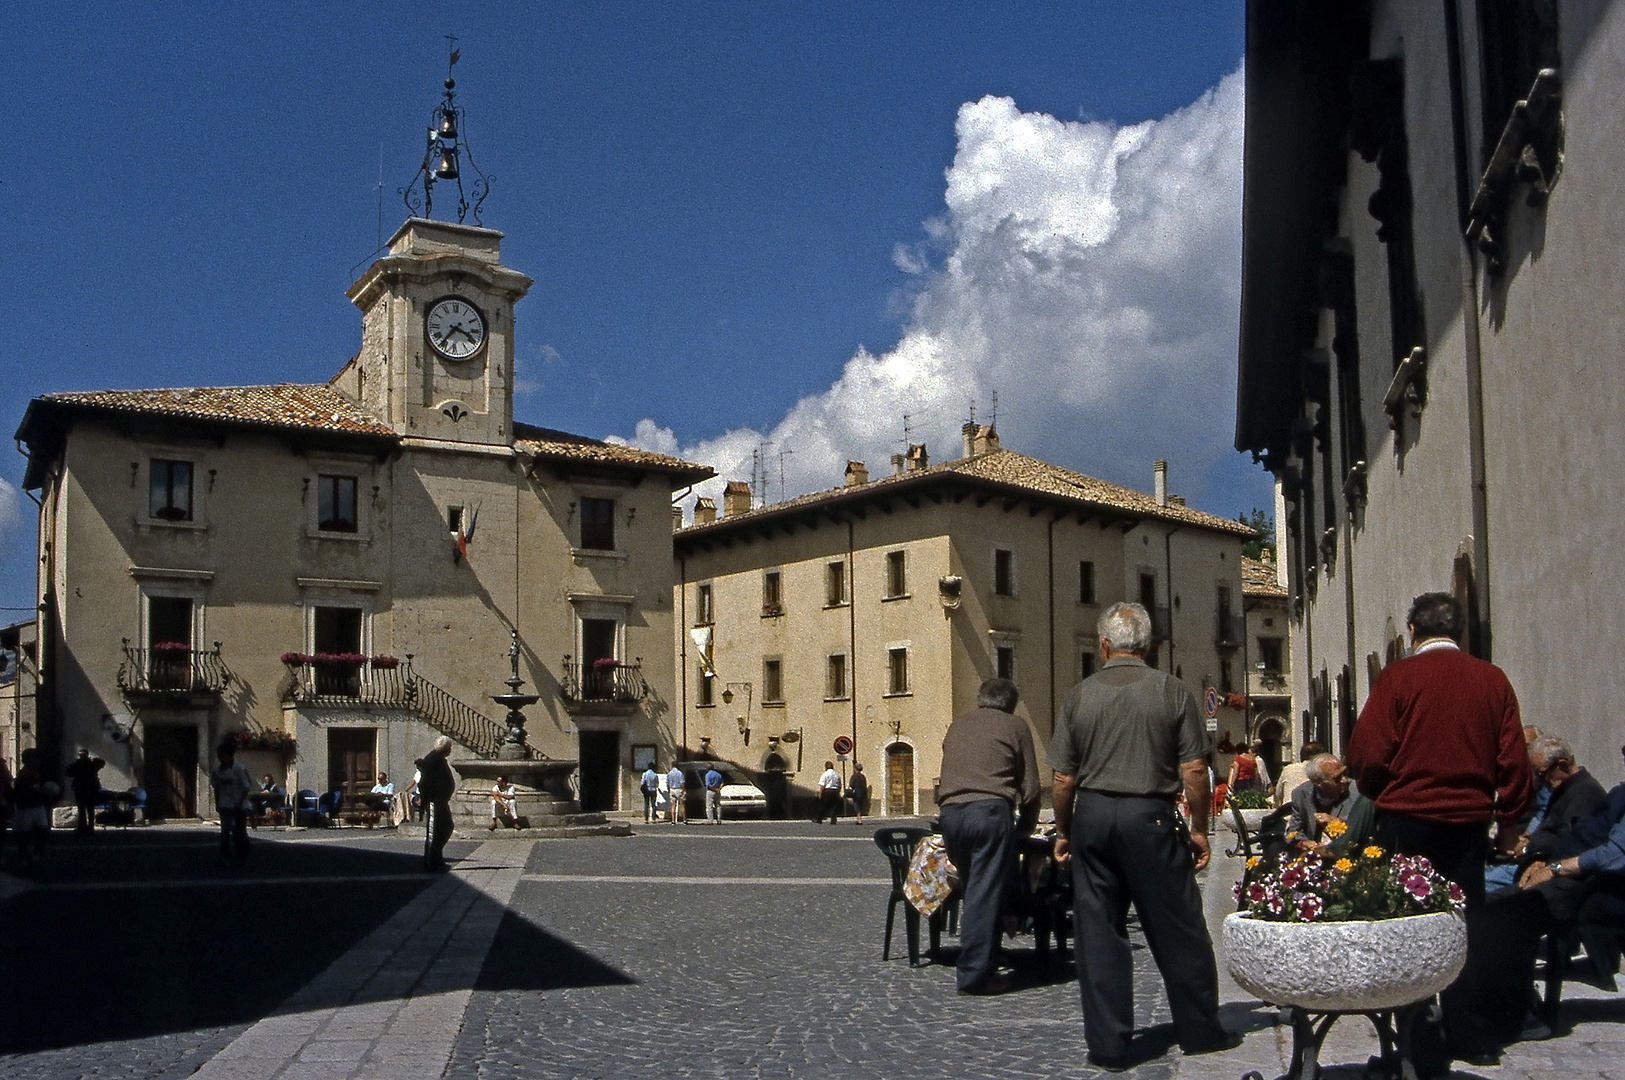 Piazza Municipio, Pescocostanzo (Abruzzen, Italië), Piazza Municipio, Pescocostanzo (Abruzzo, Italy)